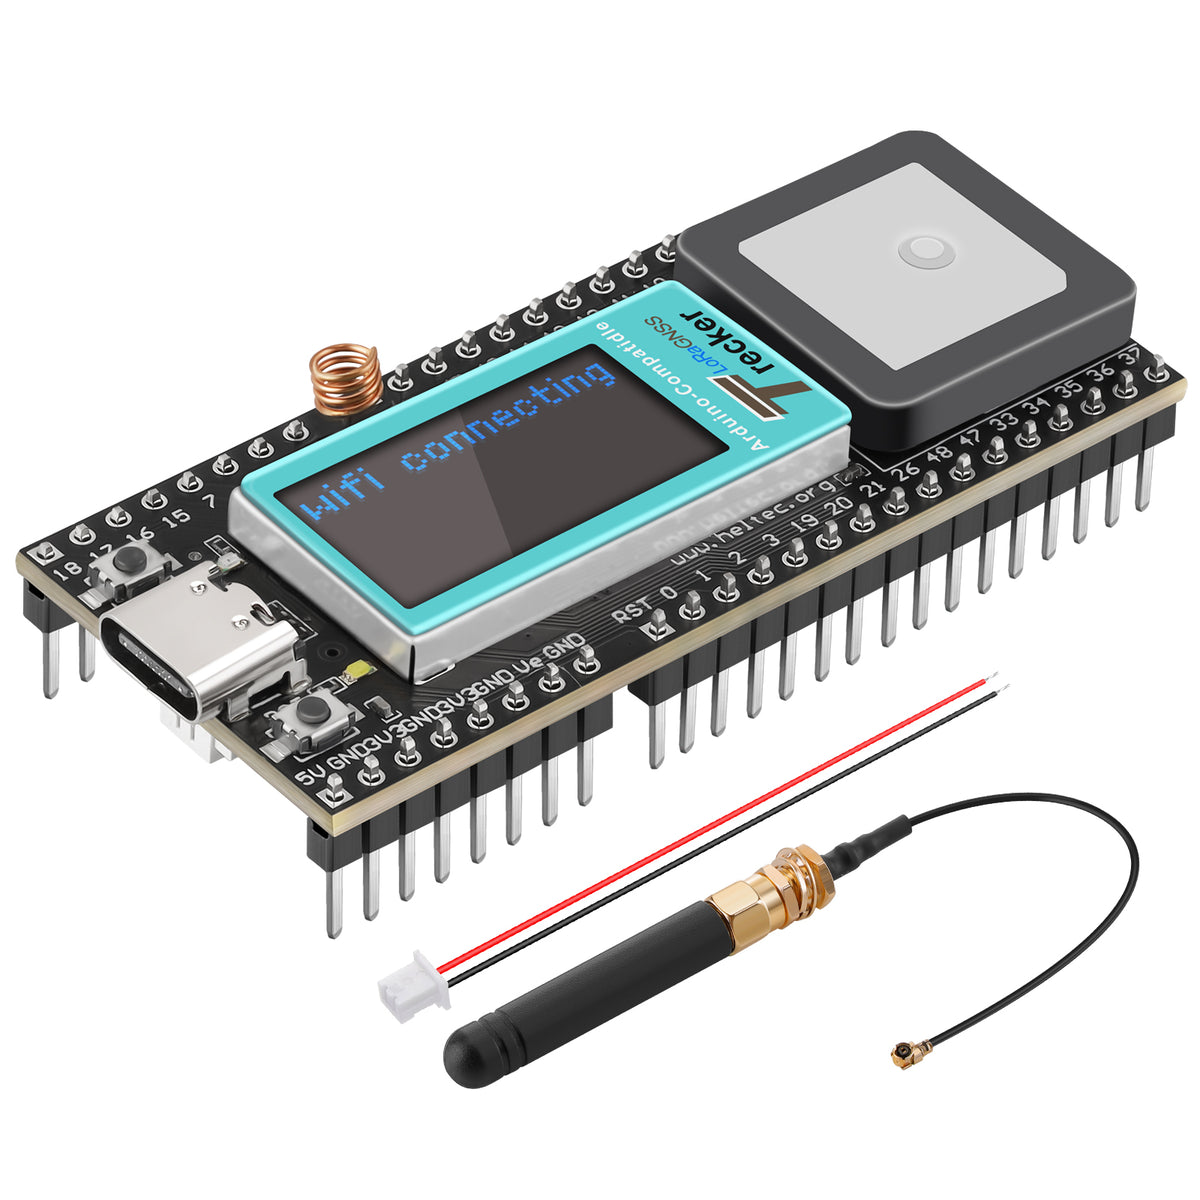 .com: M5StickC Plus ESP32-PICO Mini IoT Development Kit : Electronics